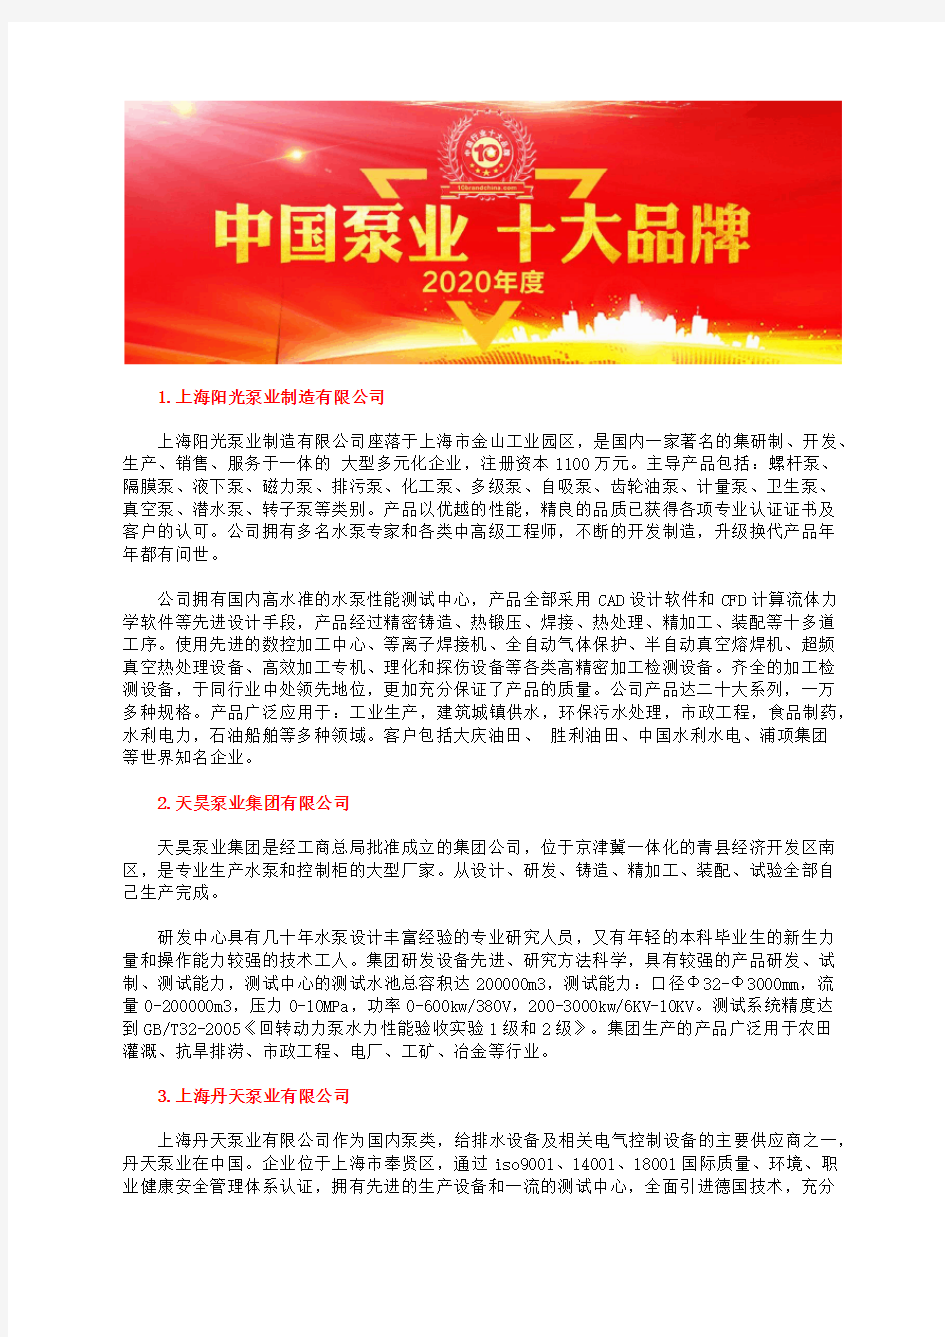 高温齿轮泵型号中国十大品牌企业排行榜